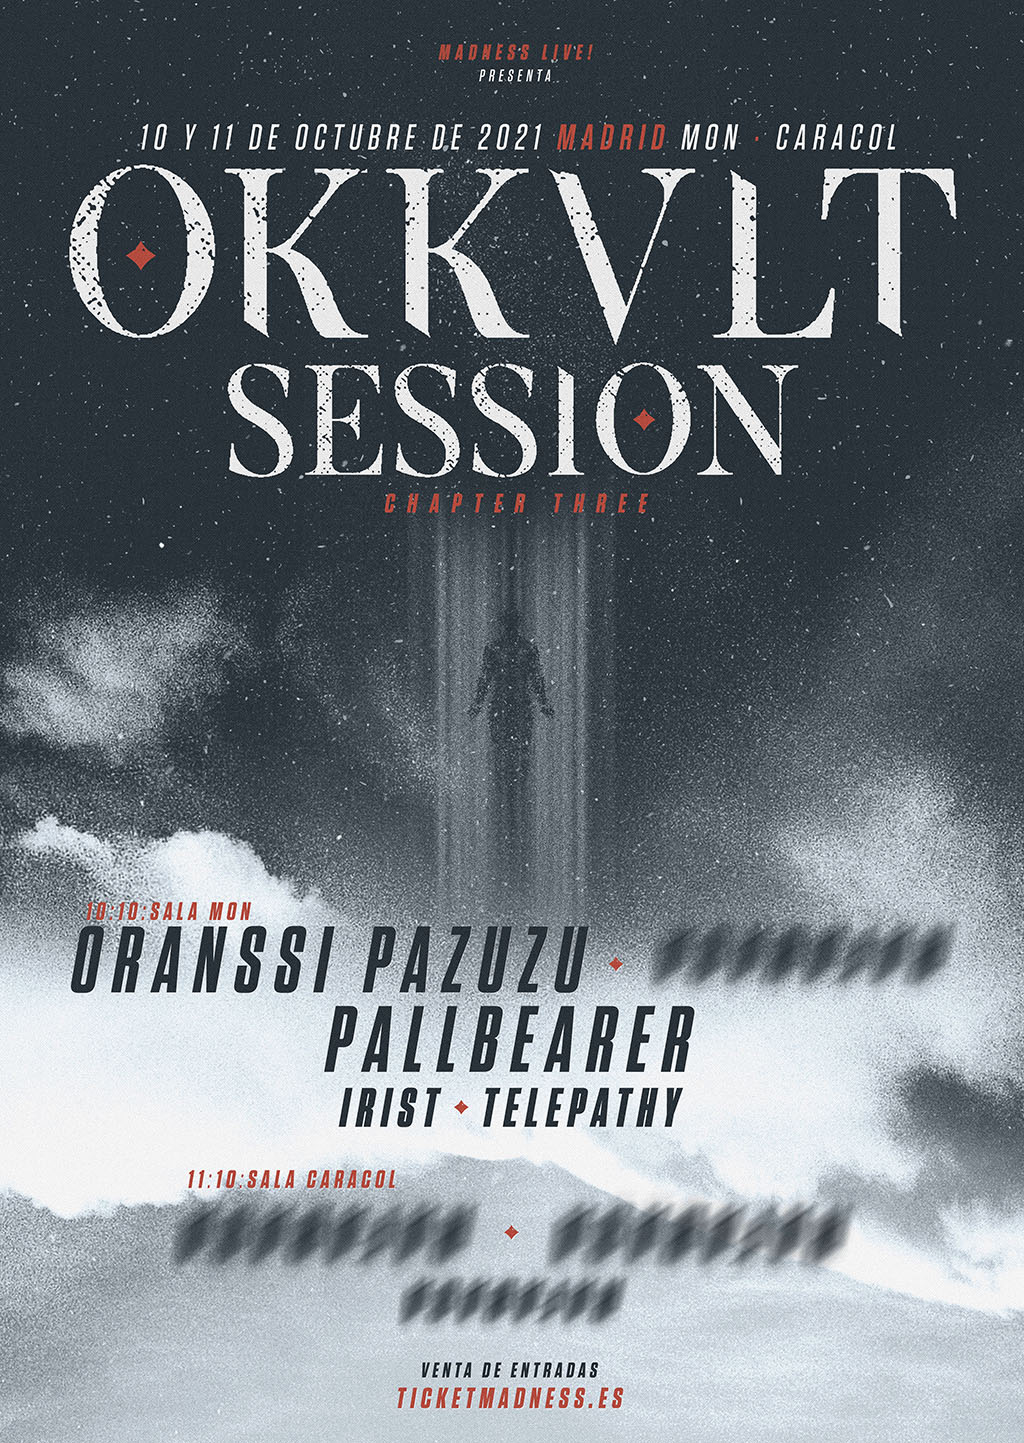 OKKULT SESSION 2021 Oranssi Pazuzu+ Pallbearer(Moon - Caracol , Madrid) - Página 8 Poster_okkult_session_III